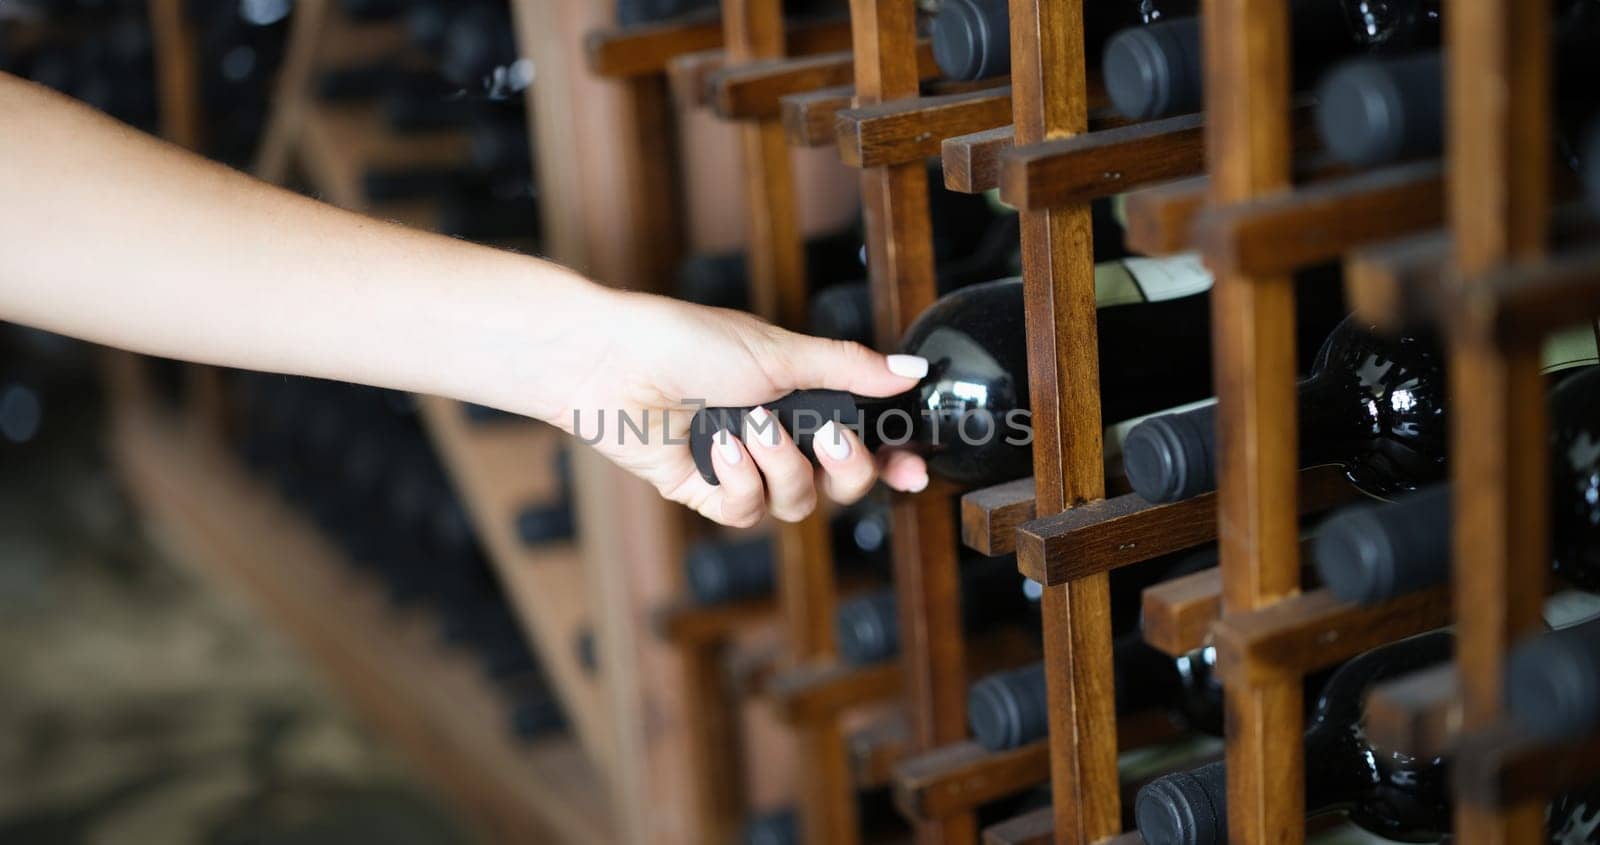 Bartender taking bottle of wine from shelf in basement by kuprevich